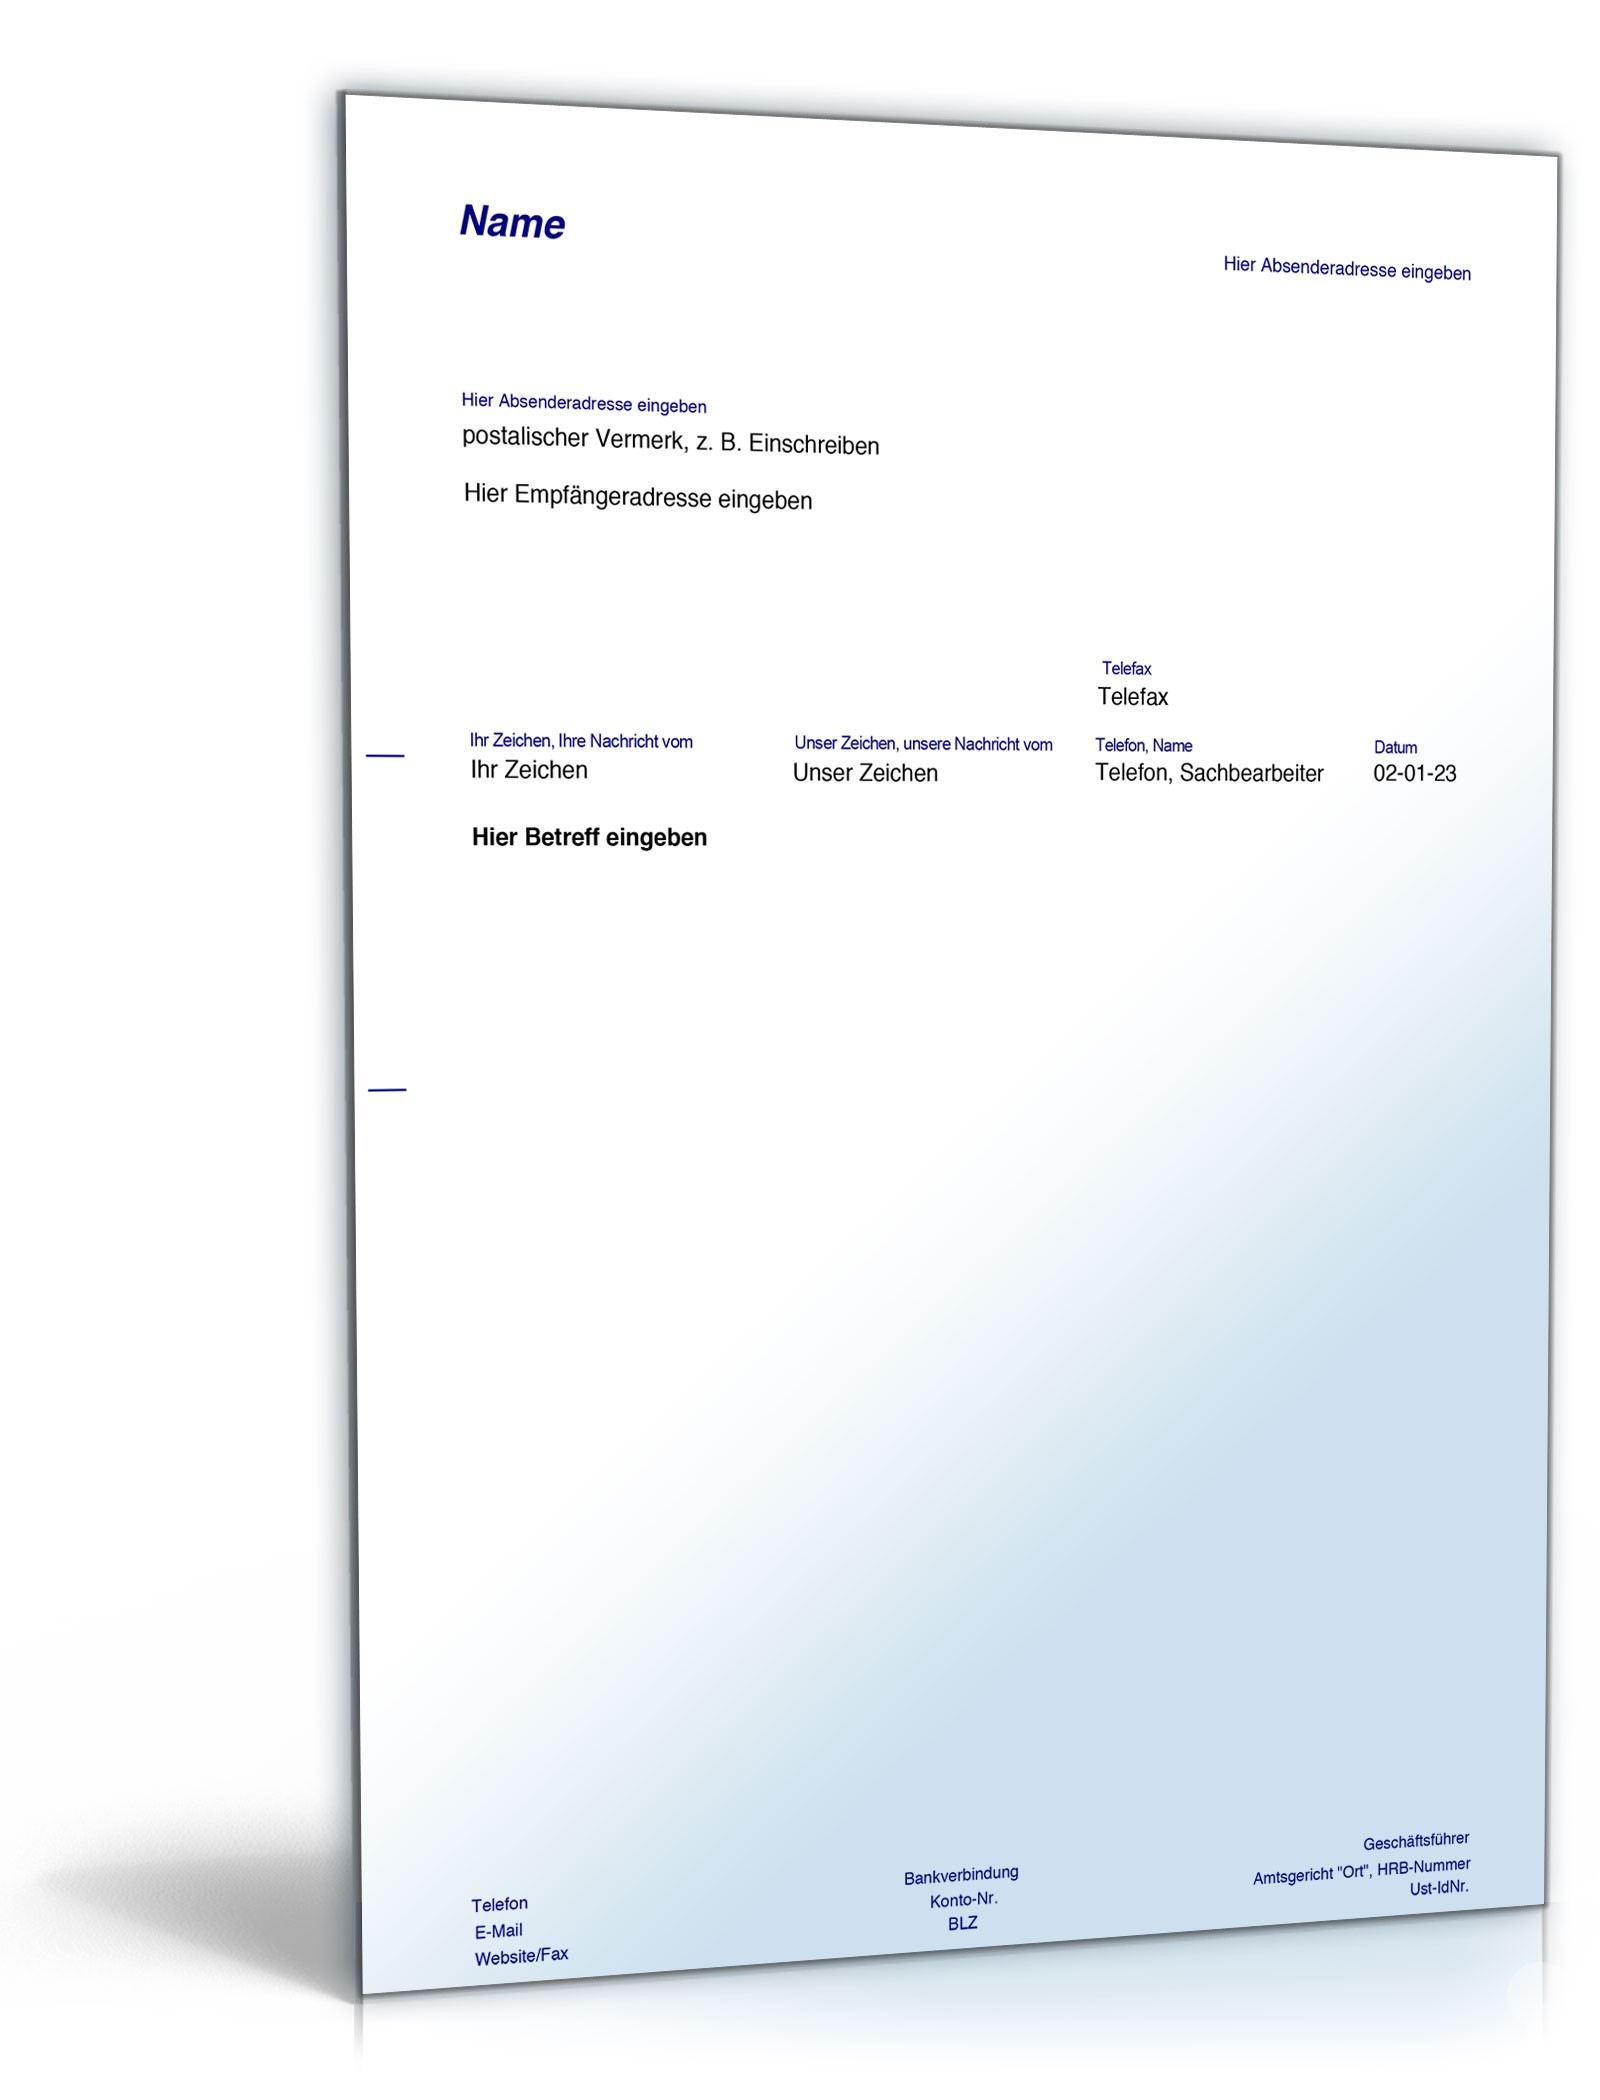 Hauptbild des Produkts: Europäischer Unfallbericht mit Schadensmeldung an die Kfz-Versicherung